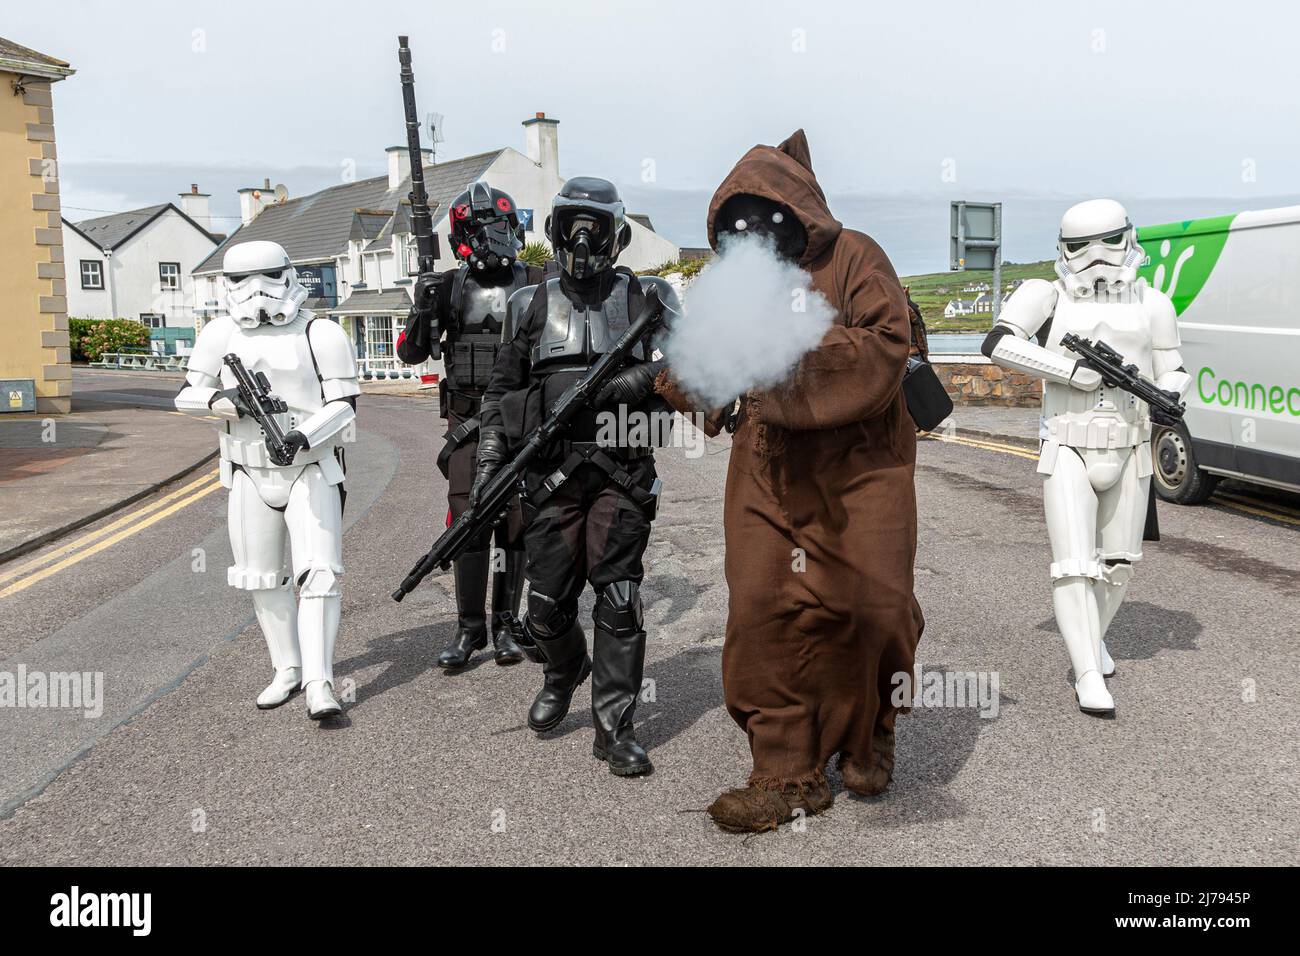 Personajes de Star Wars en mayo del 4th Festival en Portmagee, Condado de Kerry Irlanda Foto de stock